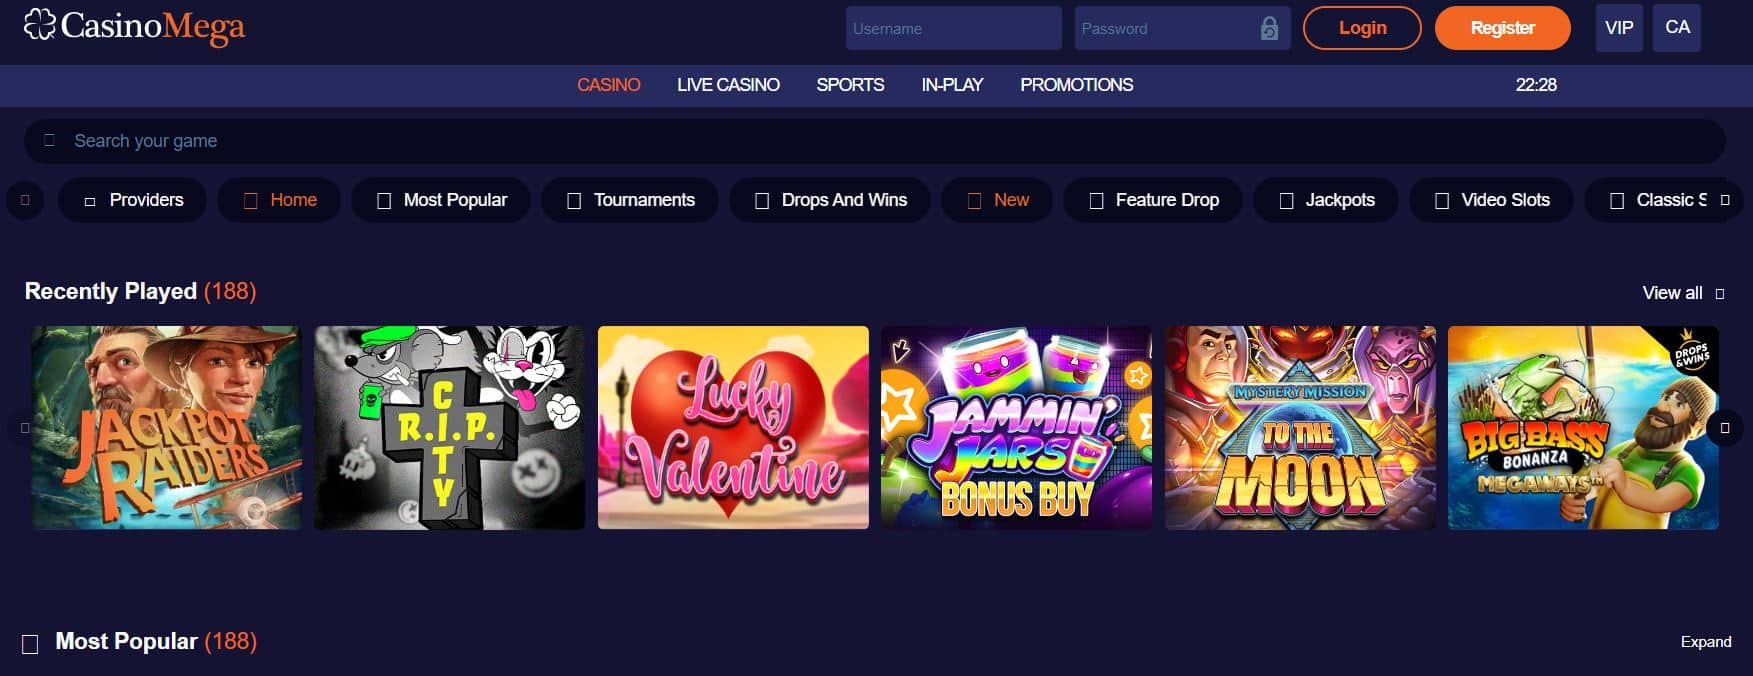 Casino Mega online casino